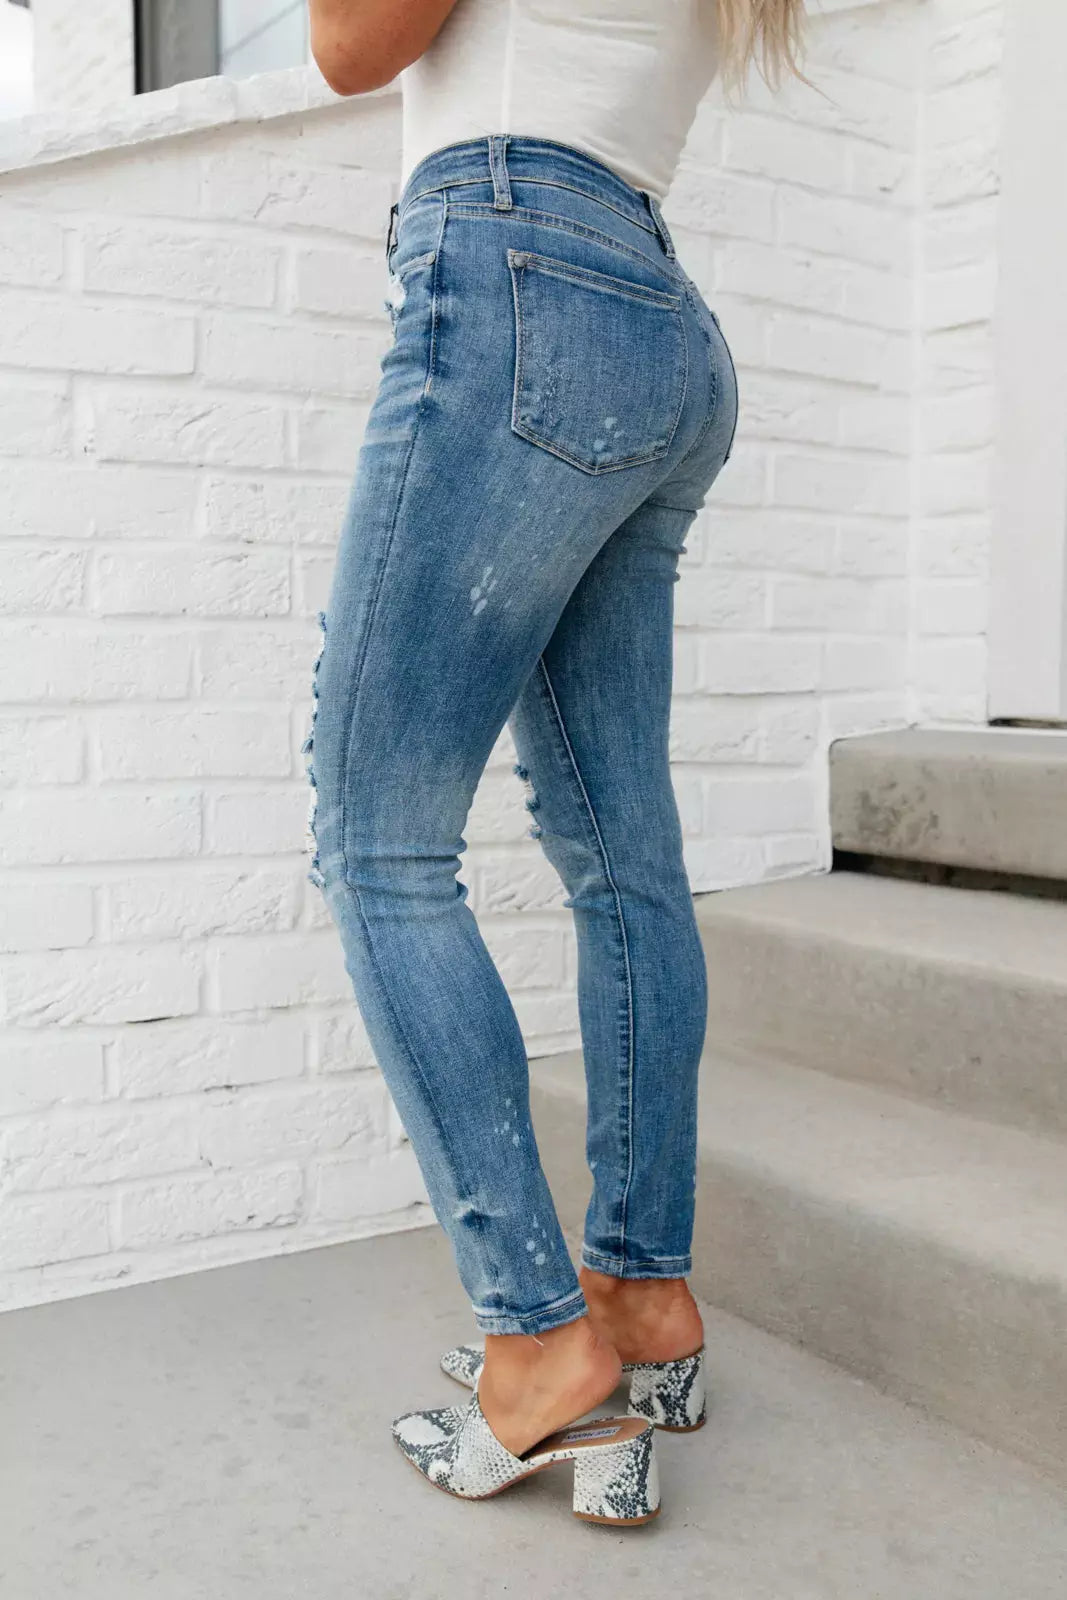 Ocean Side Distressed Skinny Jeans